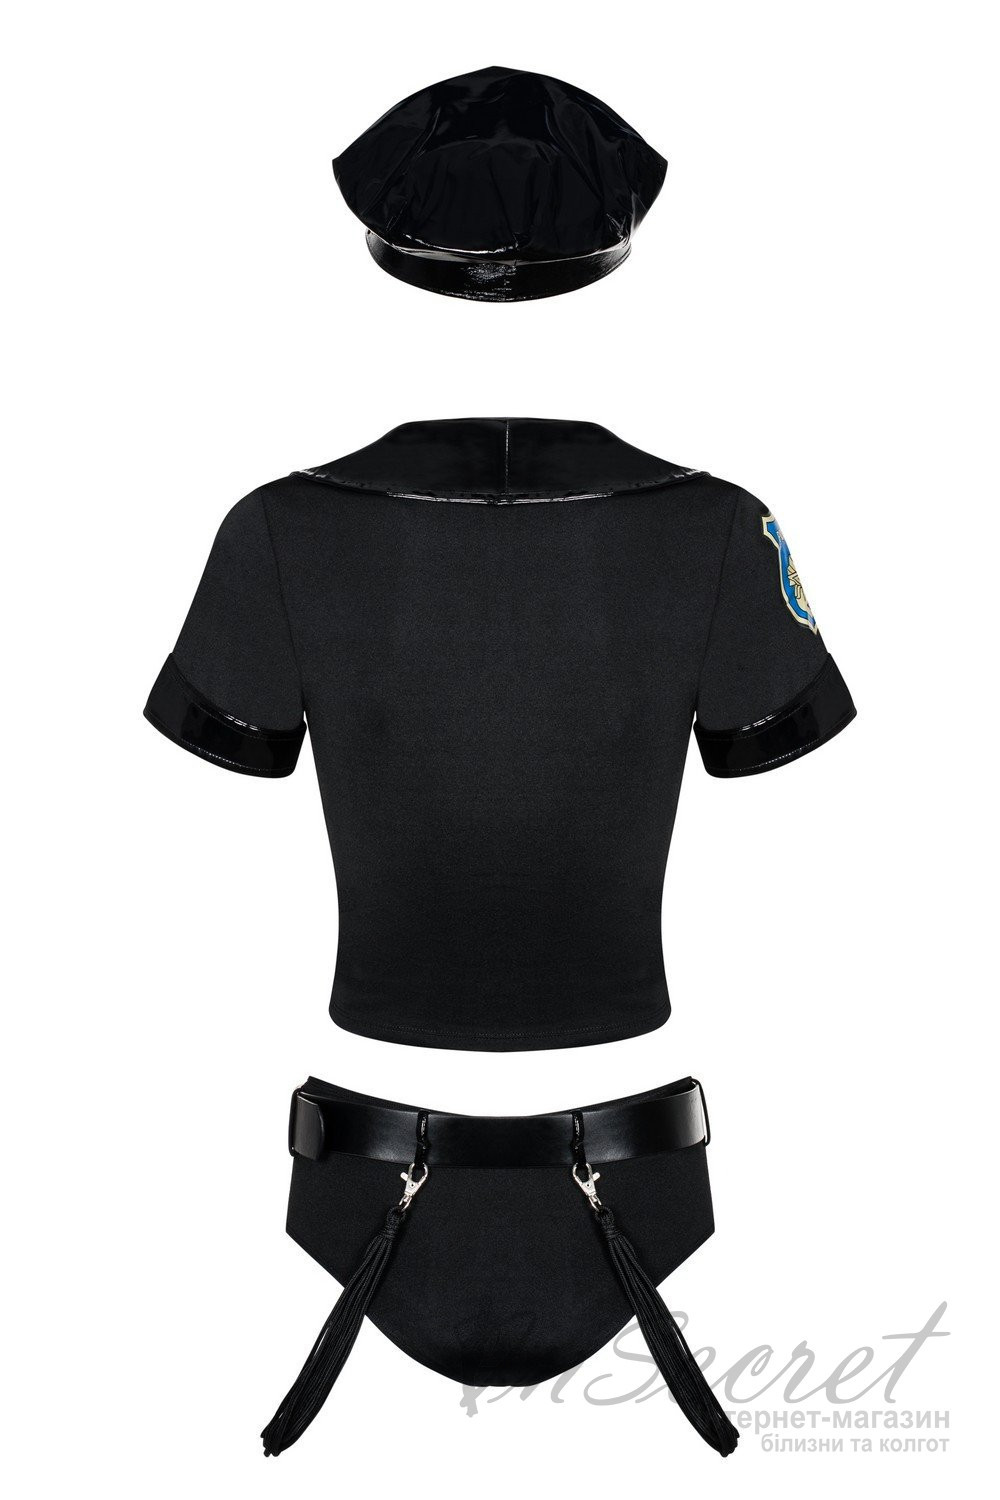 Игровой костюм полицейского Obsessive Police set